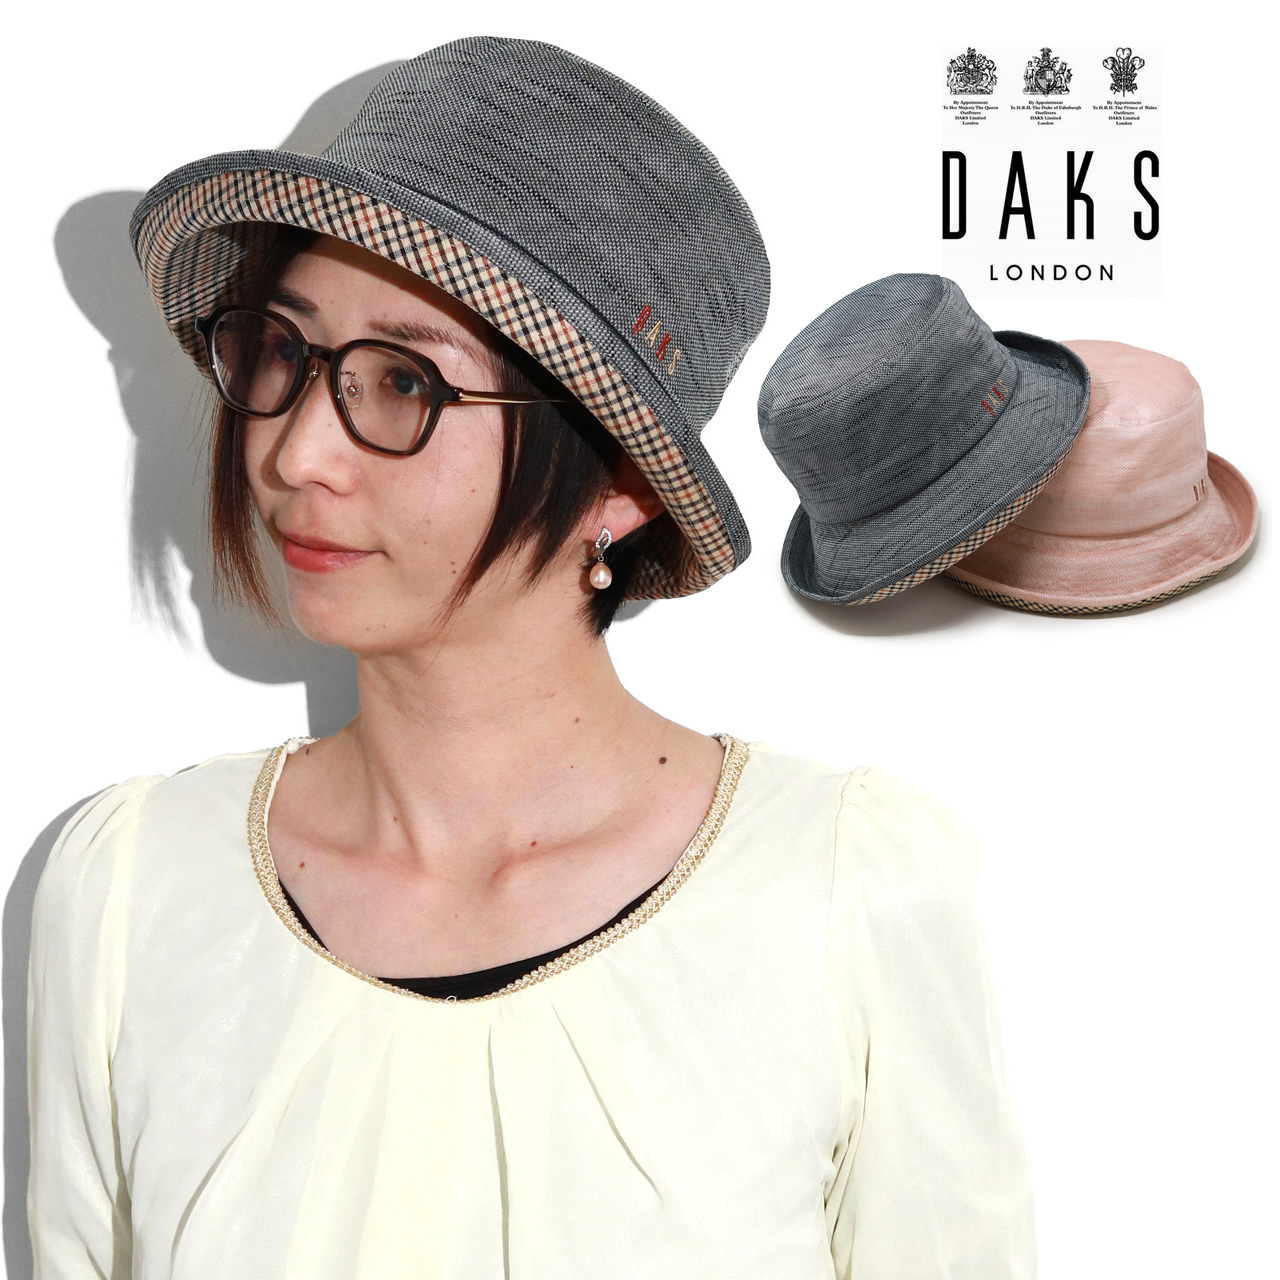 つば広 ハット 帽子 大きいサイズ レディース 春夏 ダックス 紫外線対策 送料無料 婦人 帽子 D...